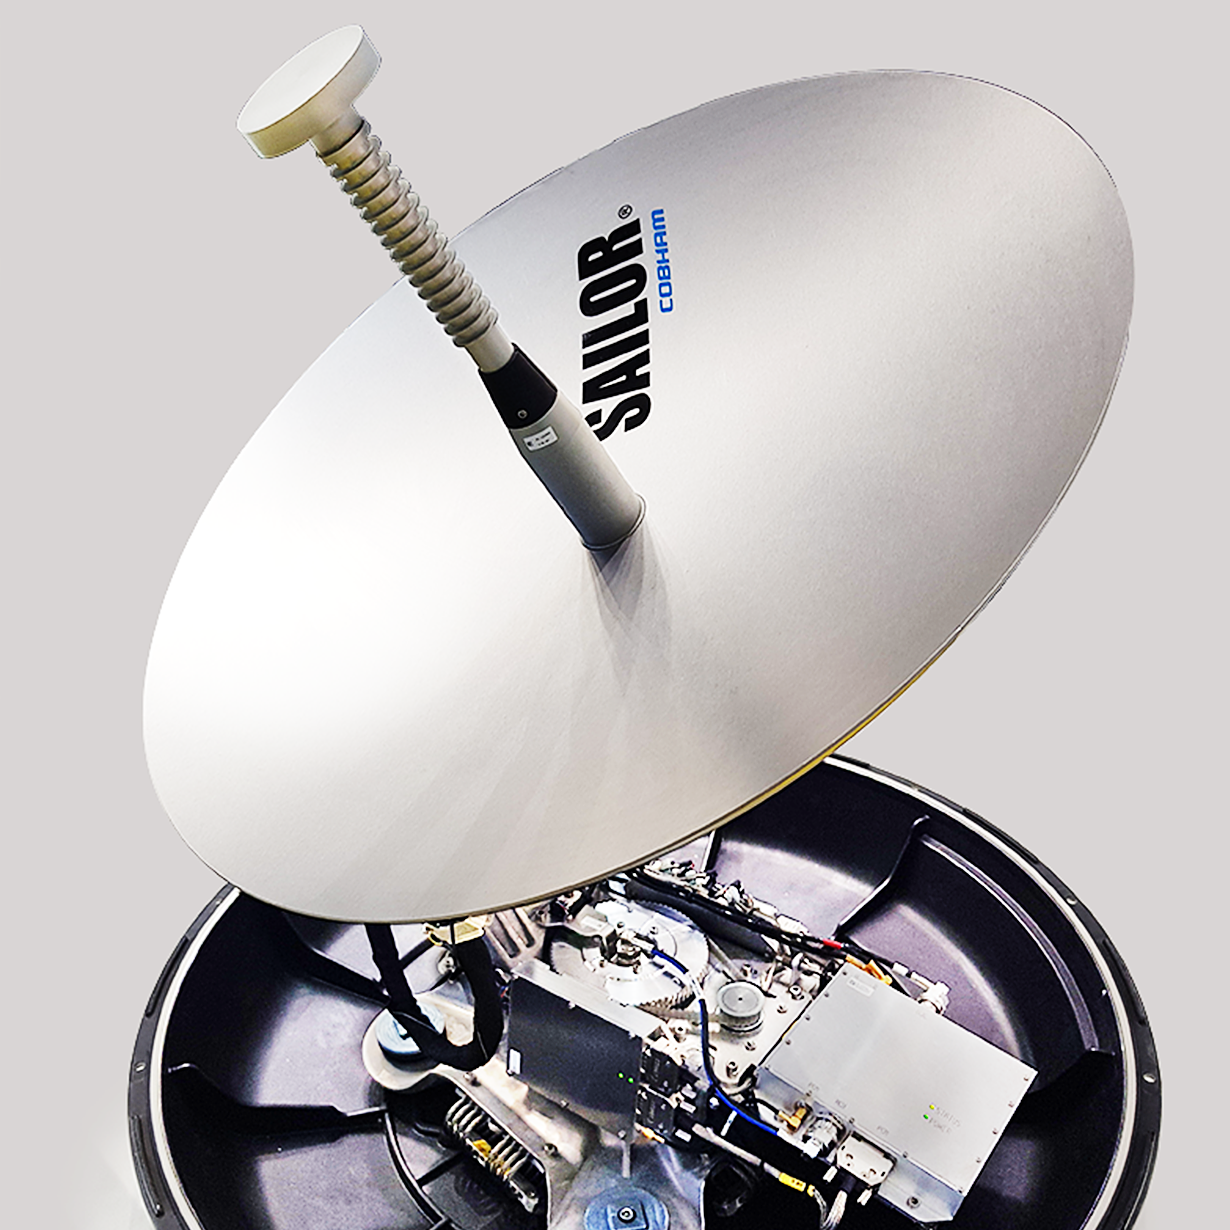 Bild på antenn som stabiliserats och isolerats med vajerisolatorer